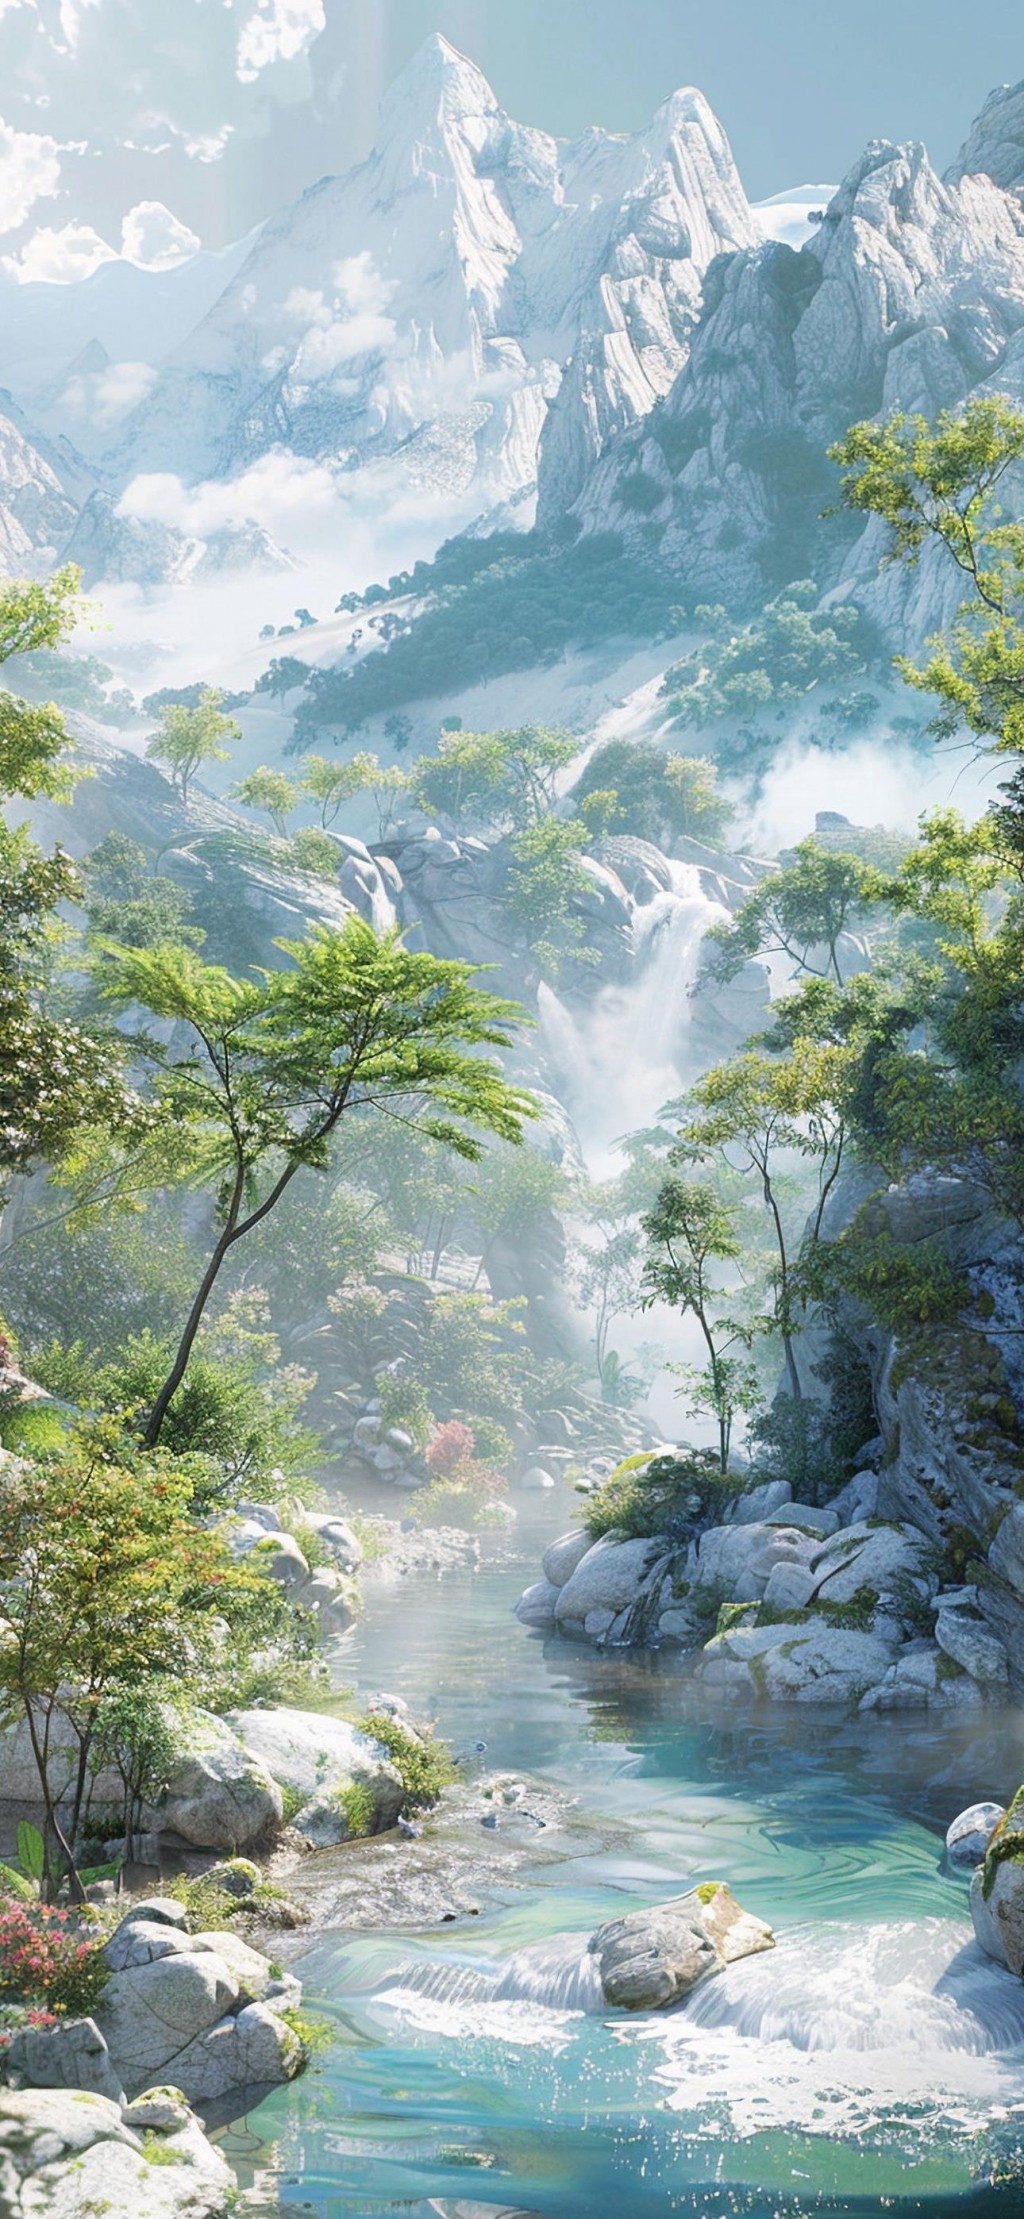 梦幻山水仙境+意境中国山水画风景手机壁纸